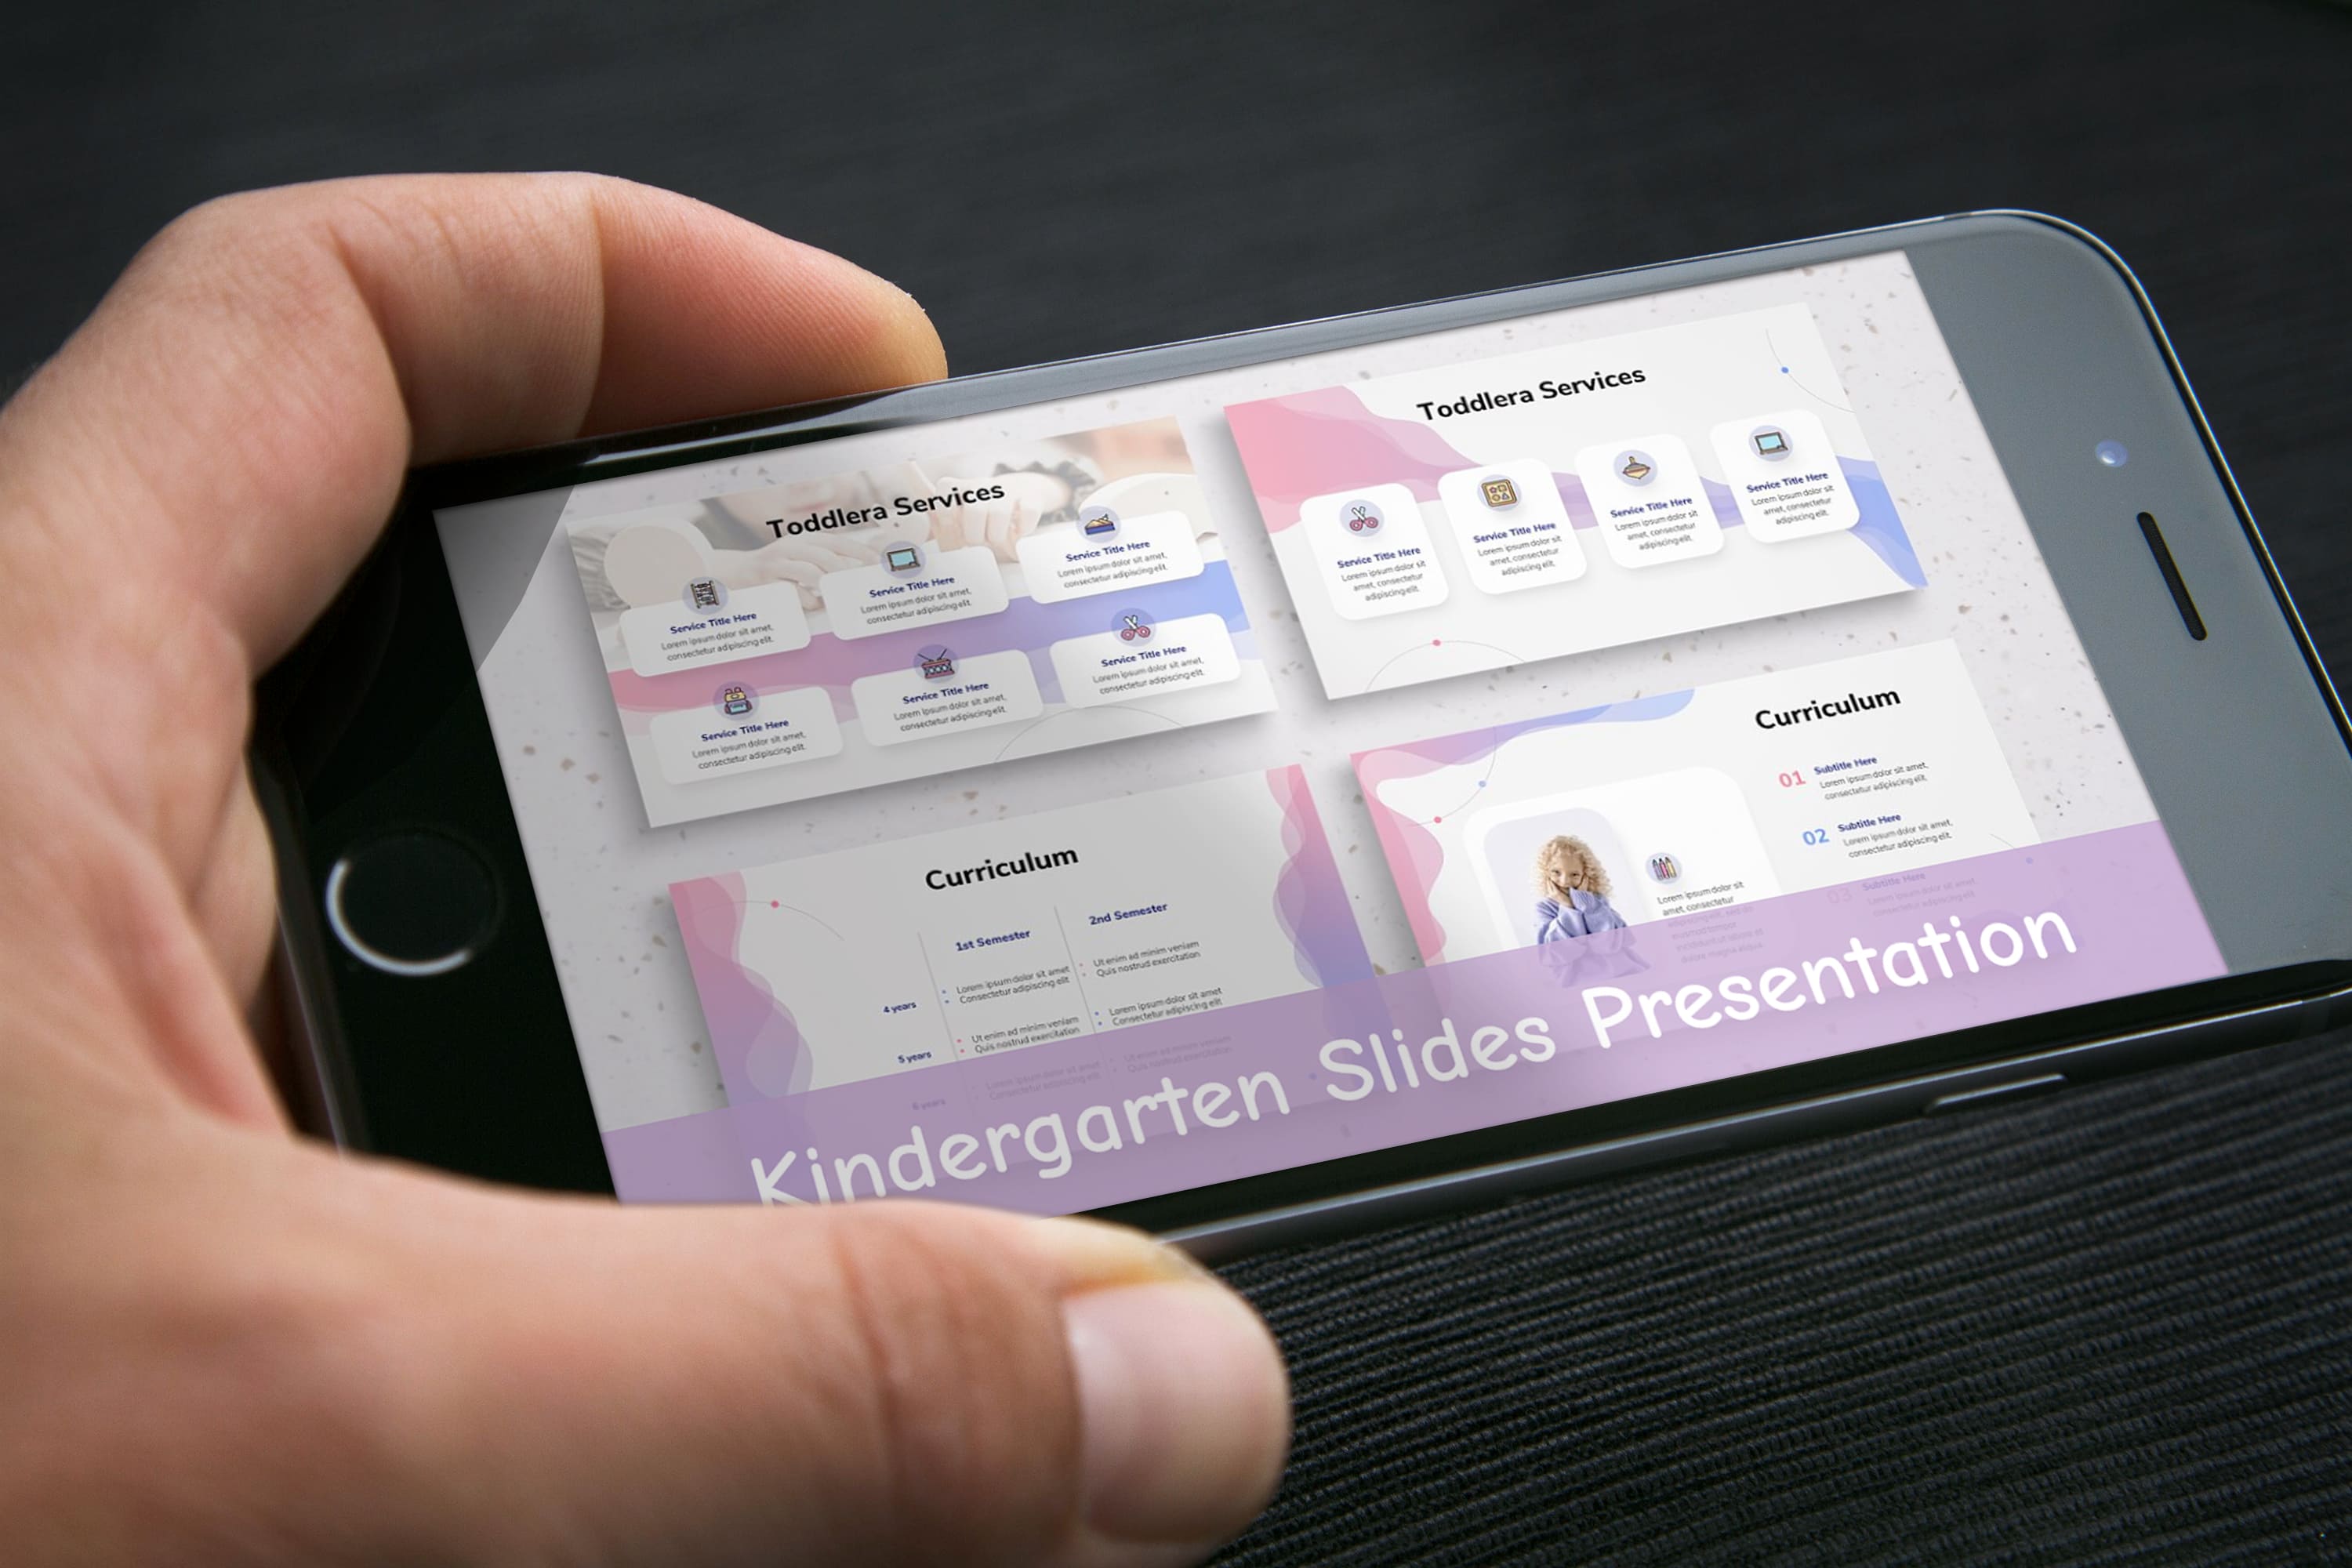 Kindergarten Slides Presentation - mobile.